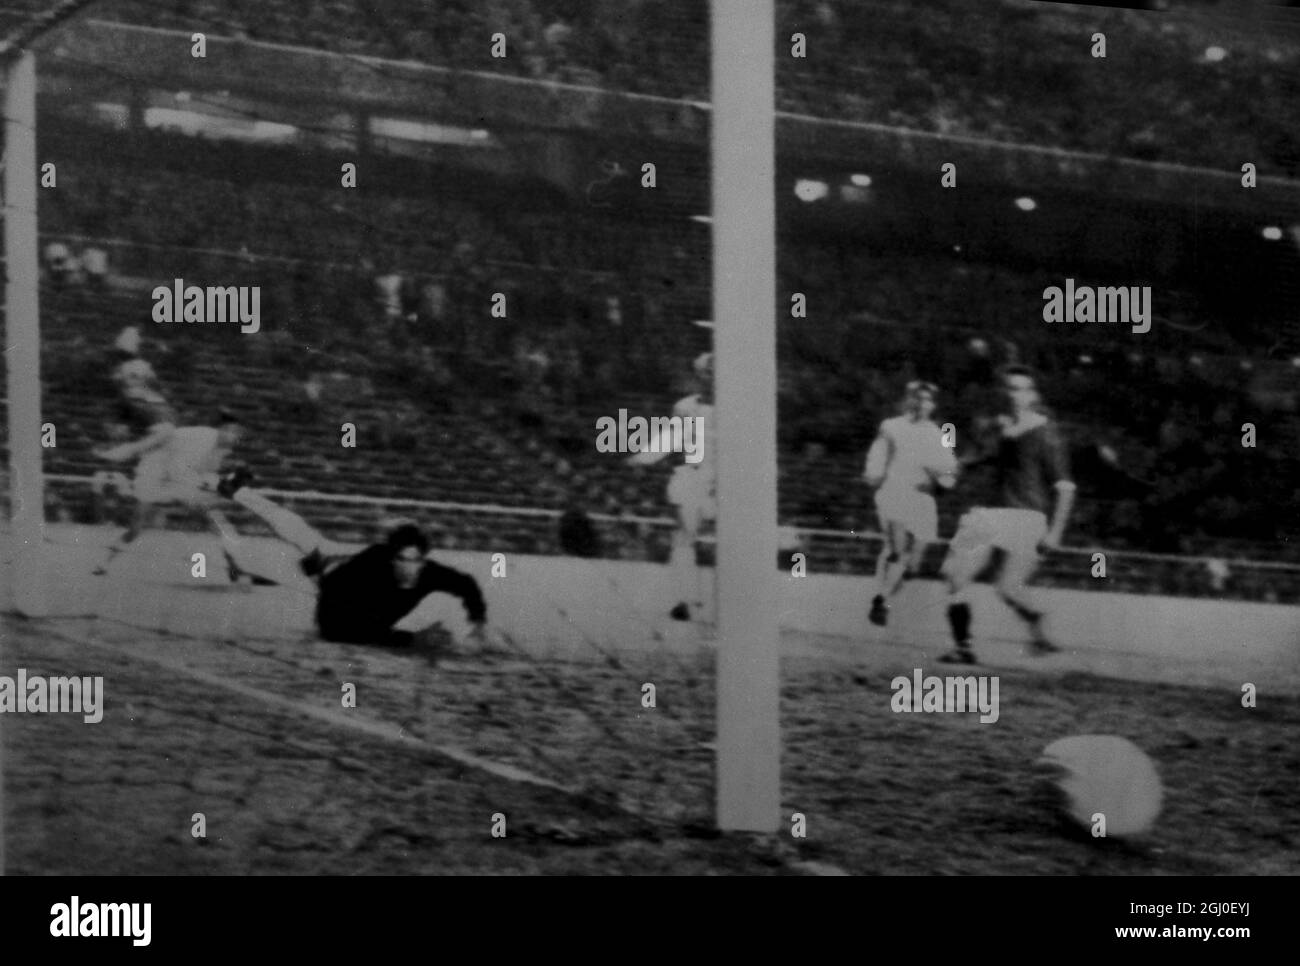 Real Madrid contro Manchester United Manchester United segnano il loro obiettivo contro il Real Madrid mentre il portiere spagnolo Dominguez cerca di salvare. Real Madrid ha vinto la partita 6-5. 12 novembre 1959. Foto Stock